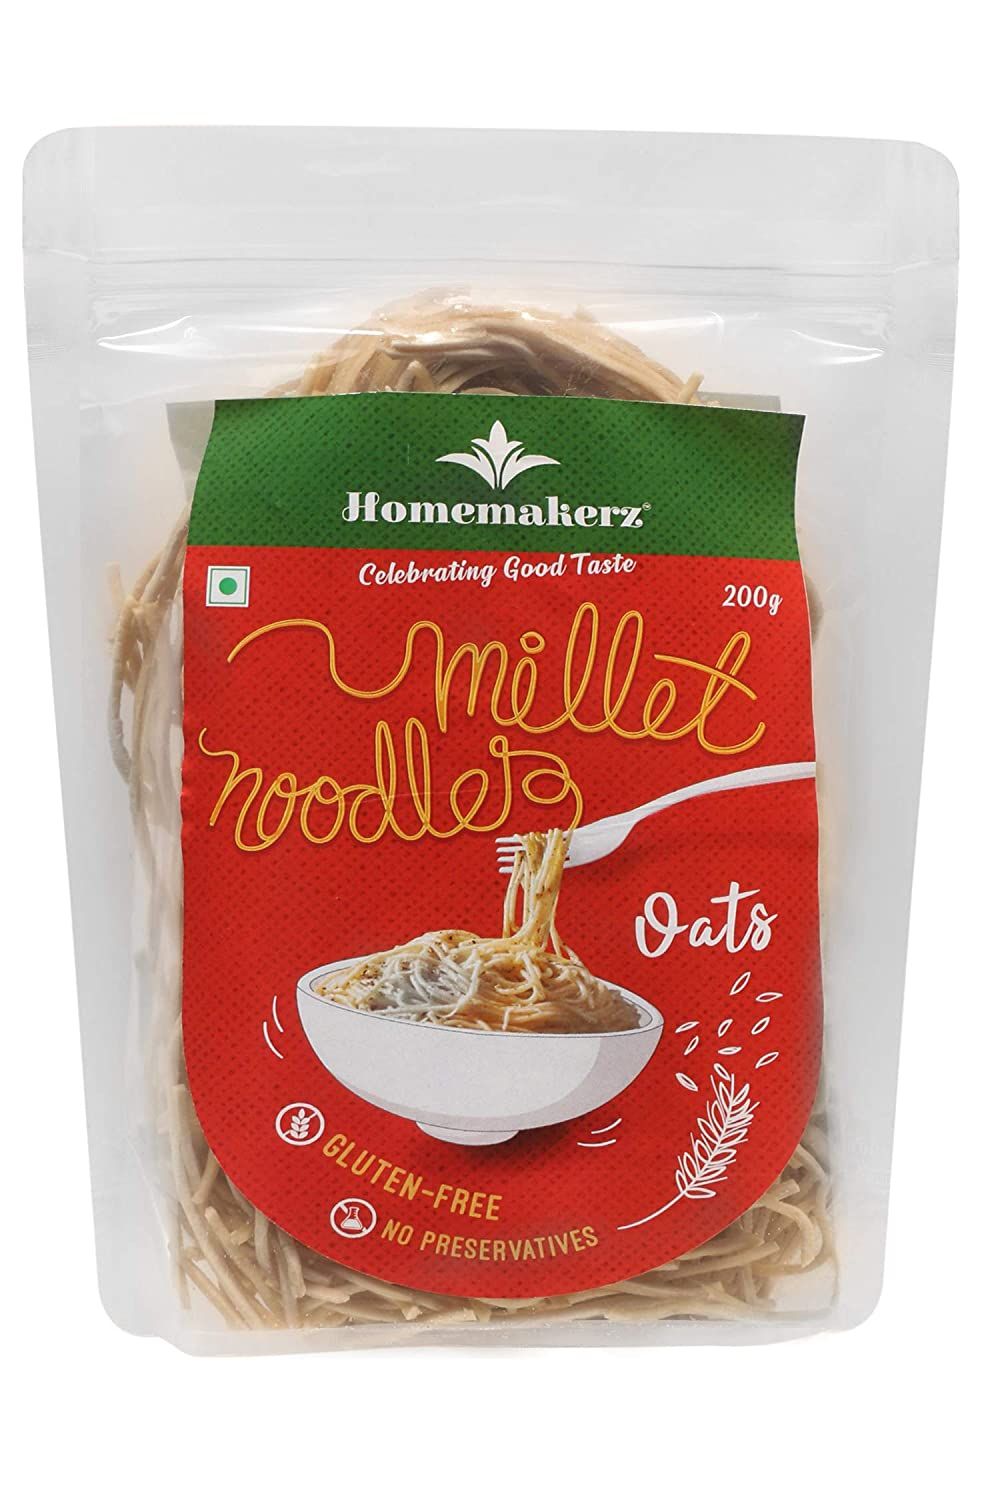 Homemakerz Oats Millet Noodles Image